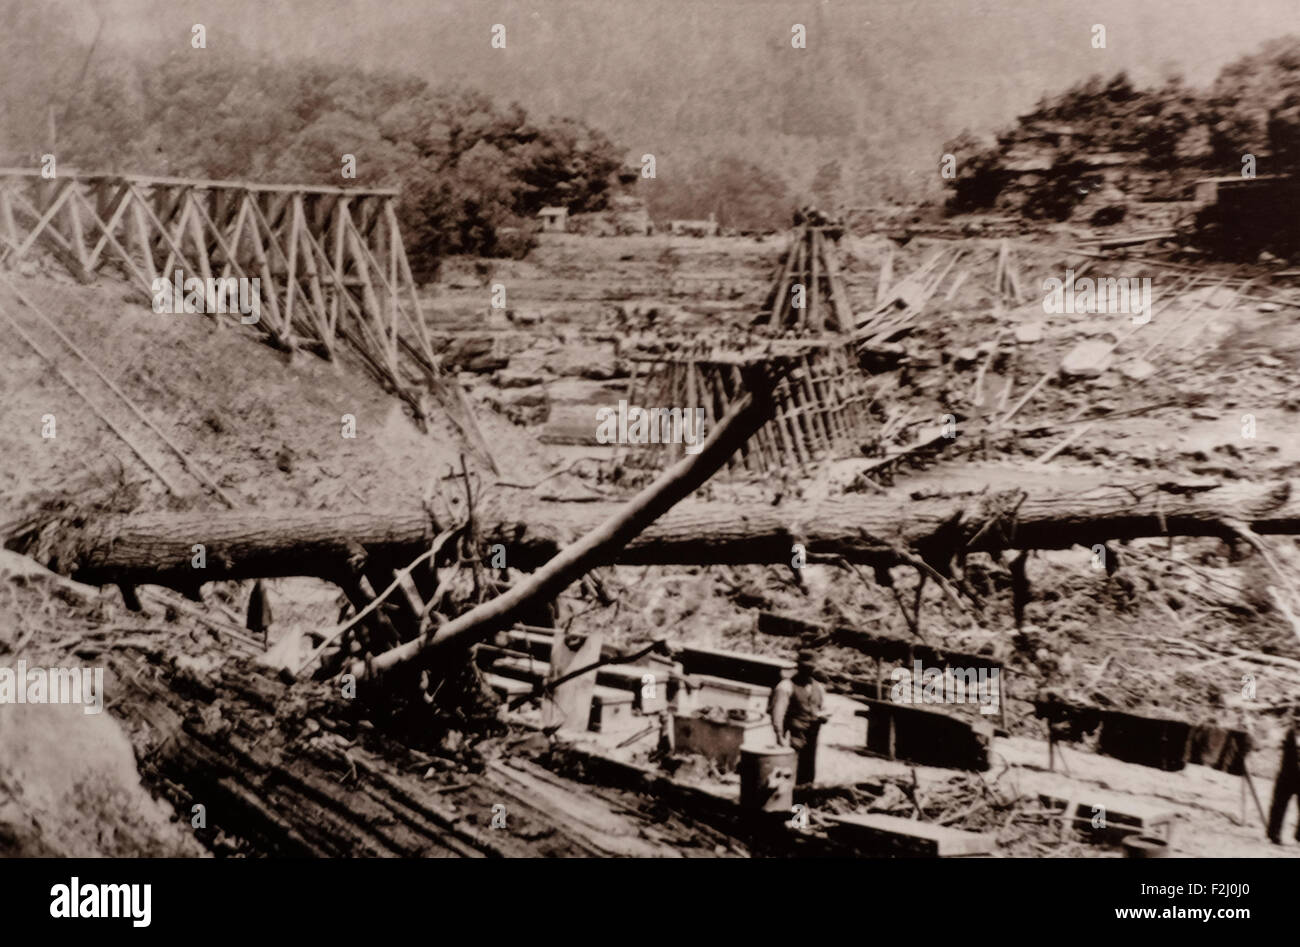 Les progrès réalisés dans la construction en bois - chevalets Double 80 pieds de haut - Longueur totale 400 pieds - construit en 5 jours après avoir été reçu du bois - la circulation ordinaire a repris 14 jours après l'inondation - Juin 14, 1889 Banque D'Images